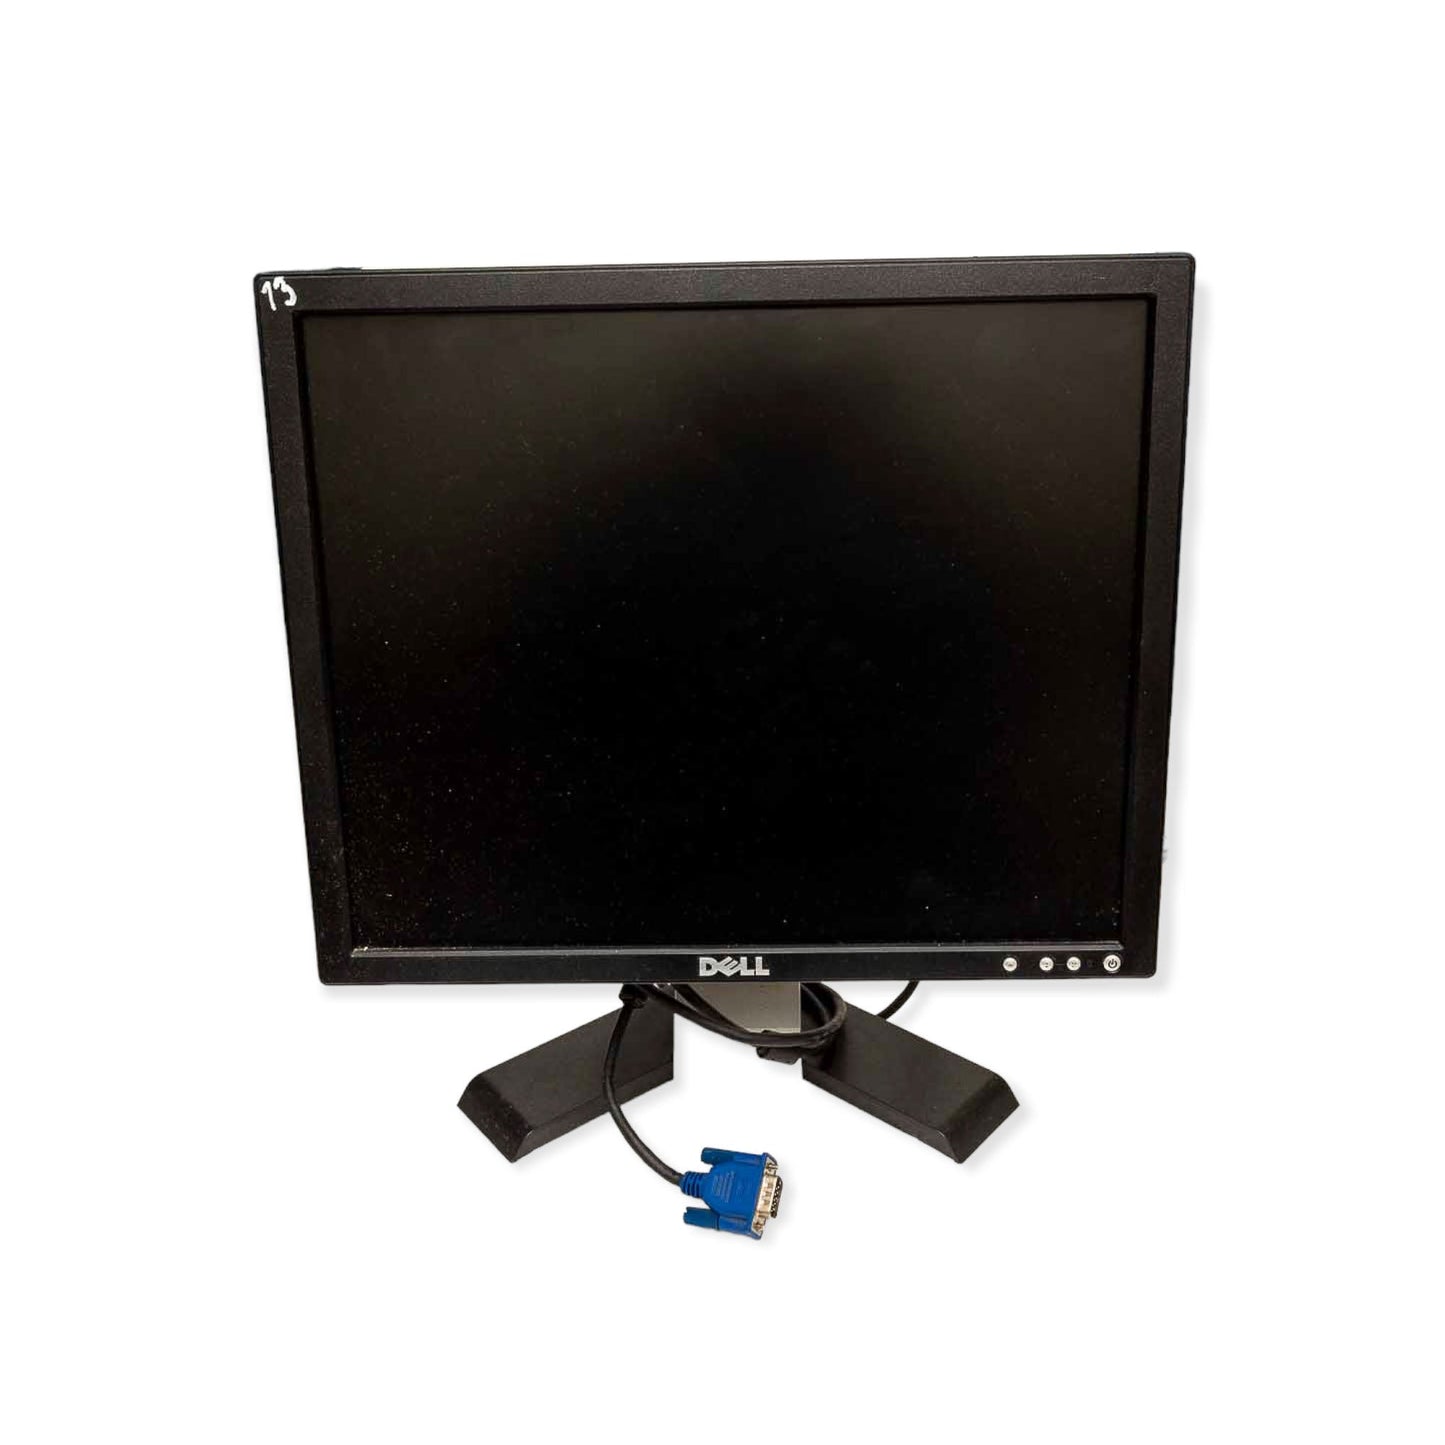 Monitor HP L1706 SH249 17' 1280 x 1024 60 Hz TFT